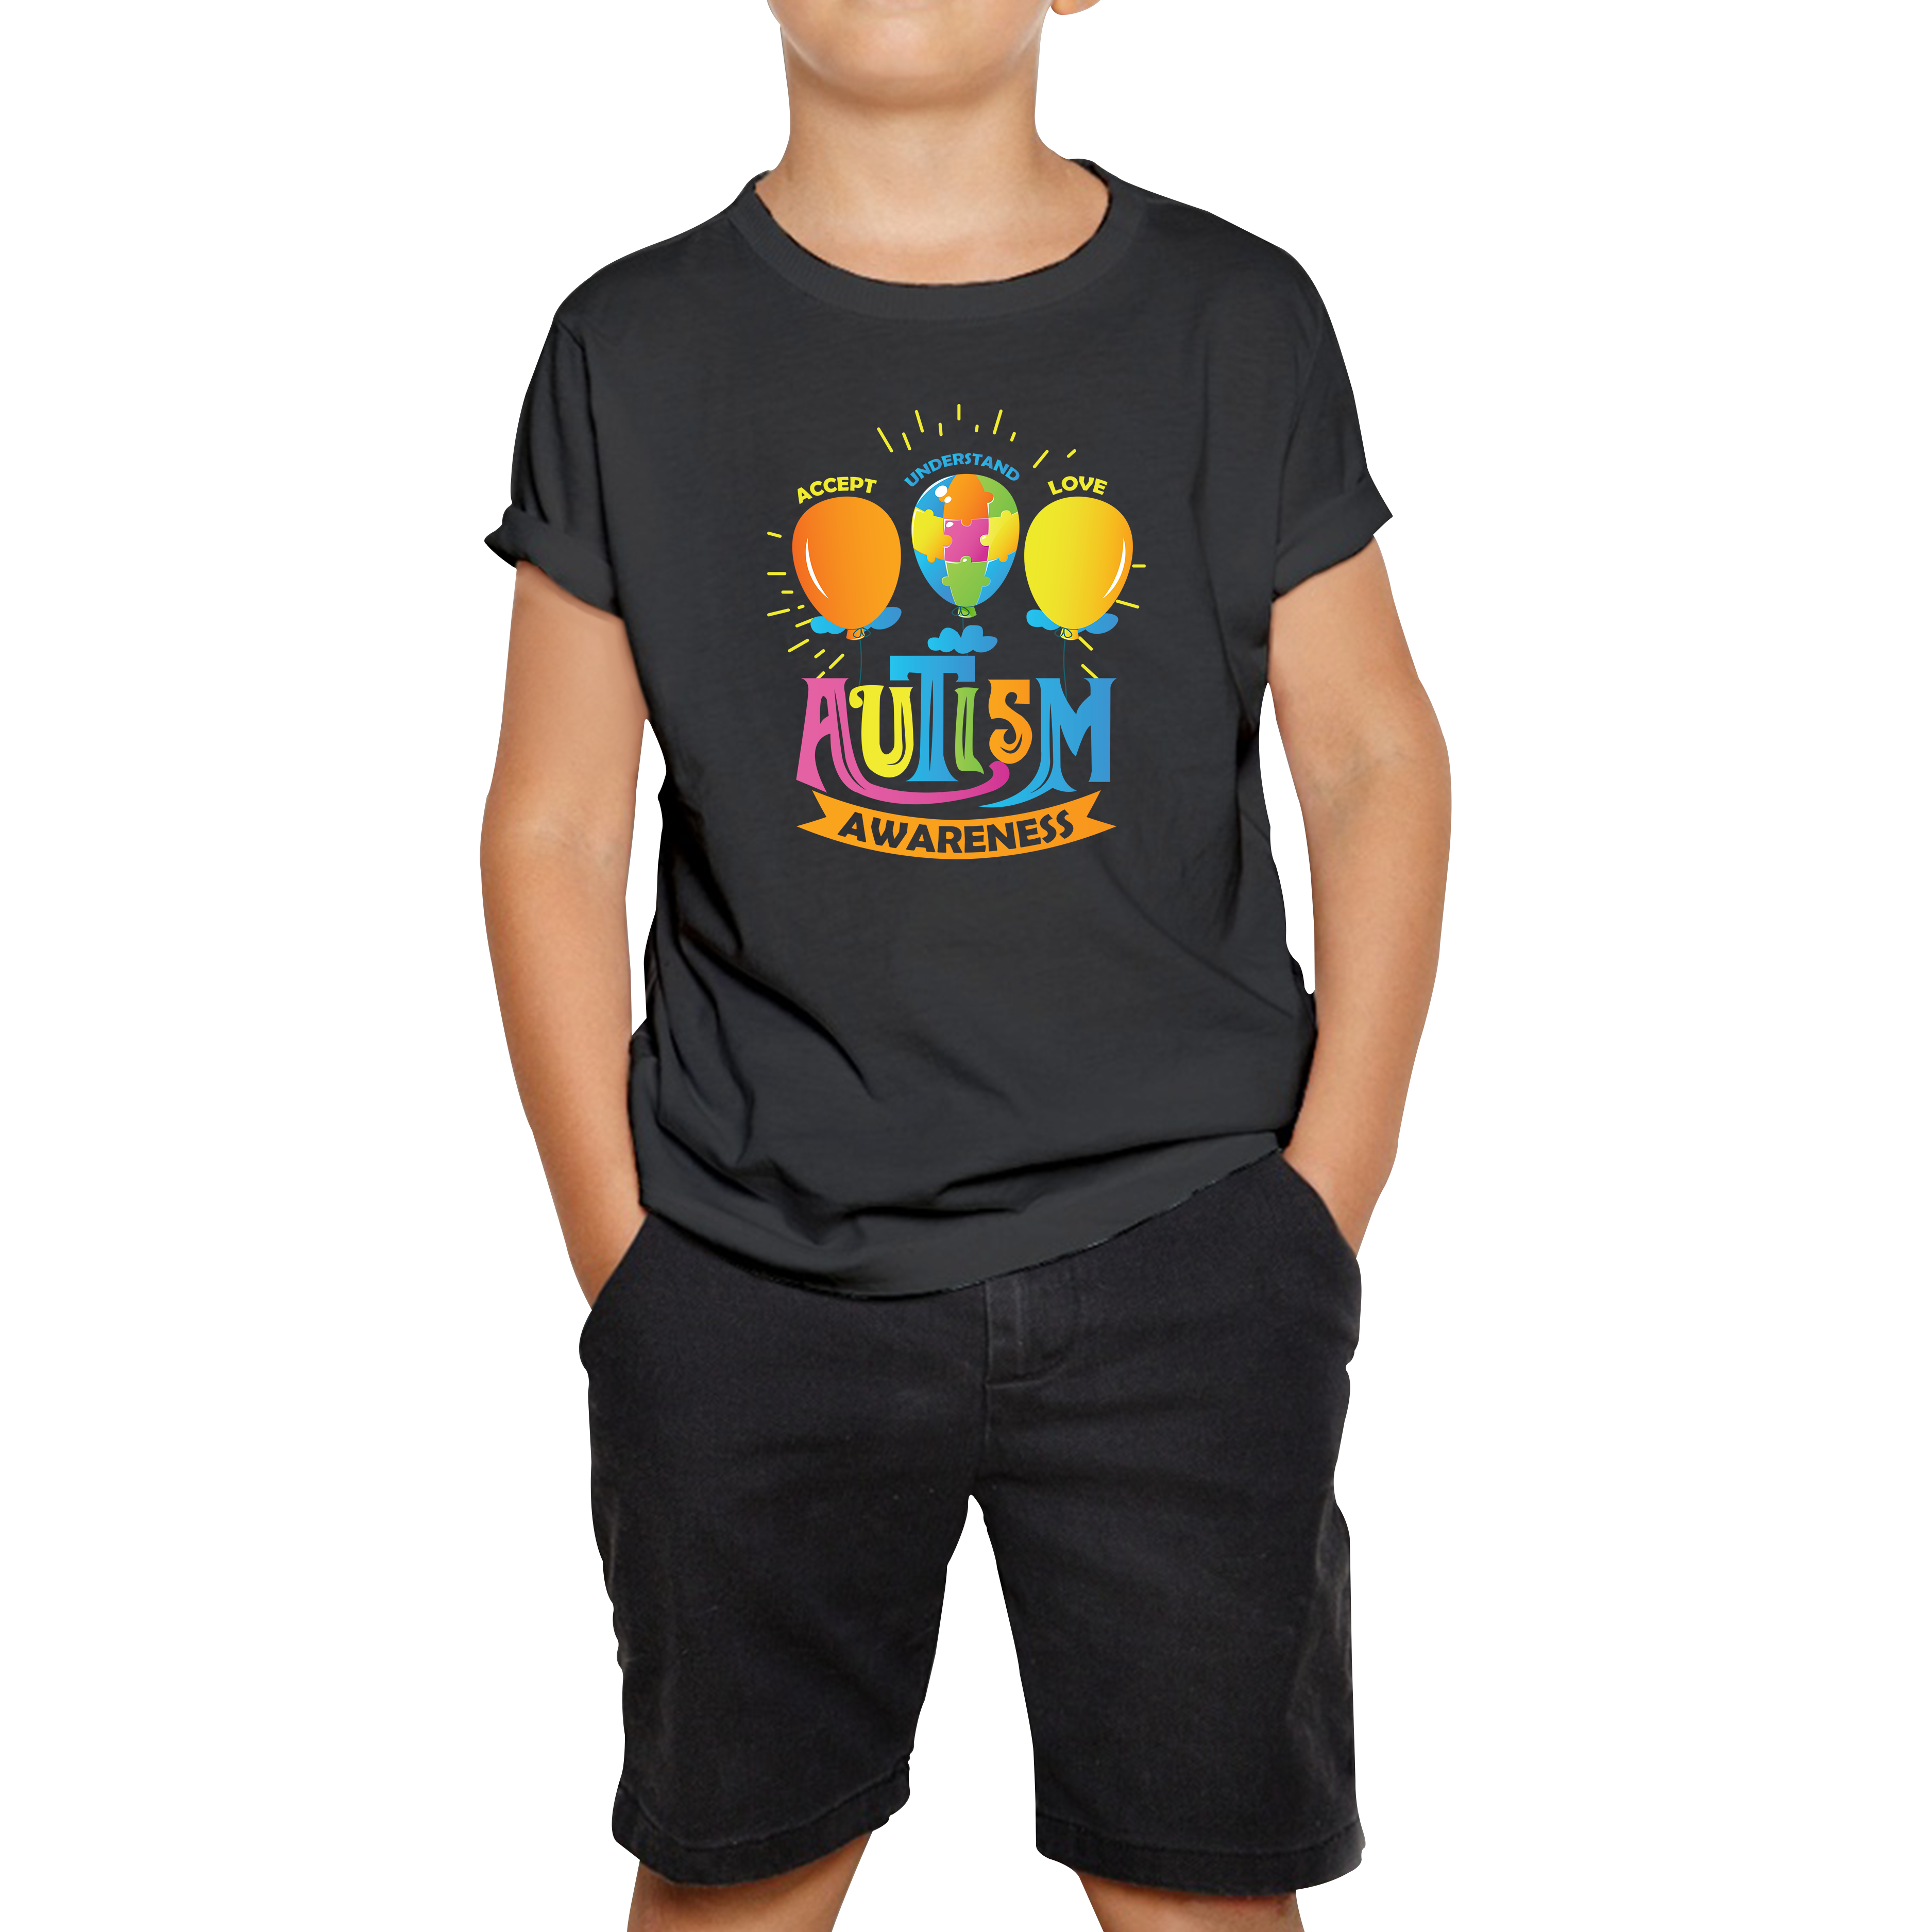 Autism Awareness Accept Understand Love Kids T Shirt